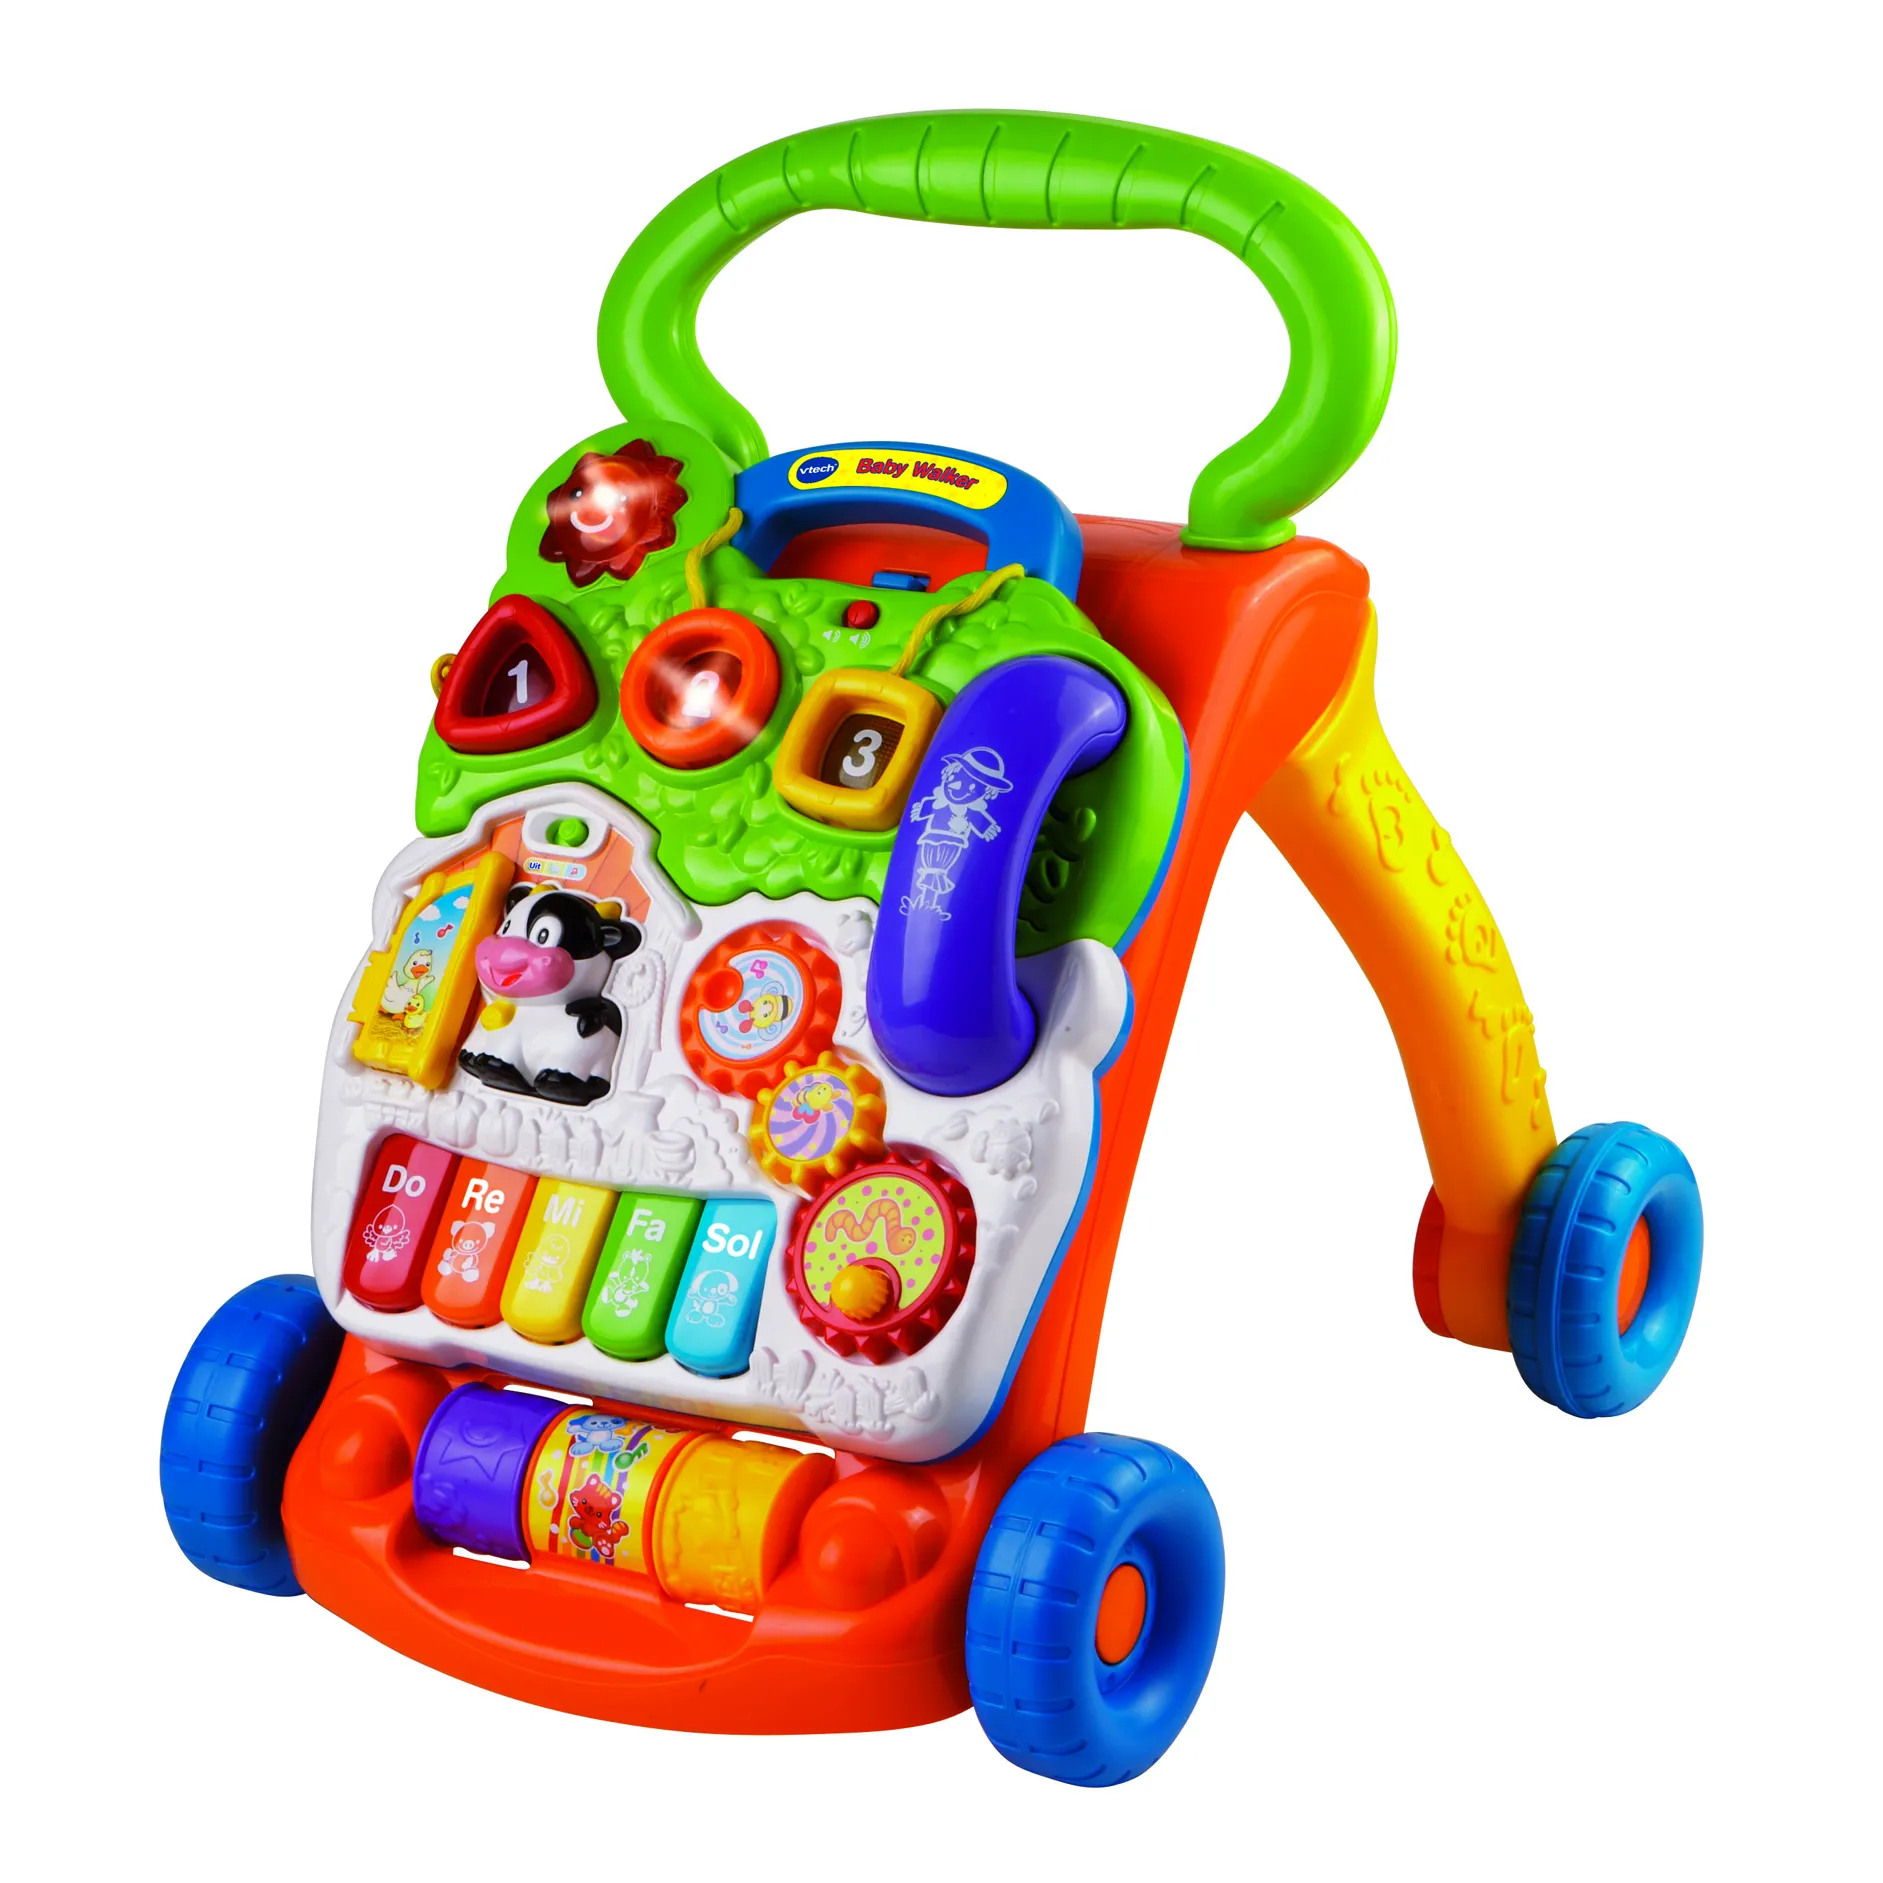 Het leukste speelgoed voor kinderen van 1 jaar, gericht ontwikkeling